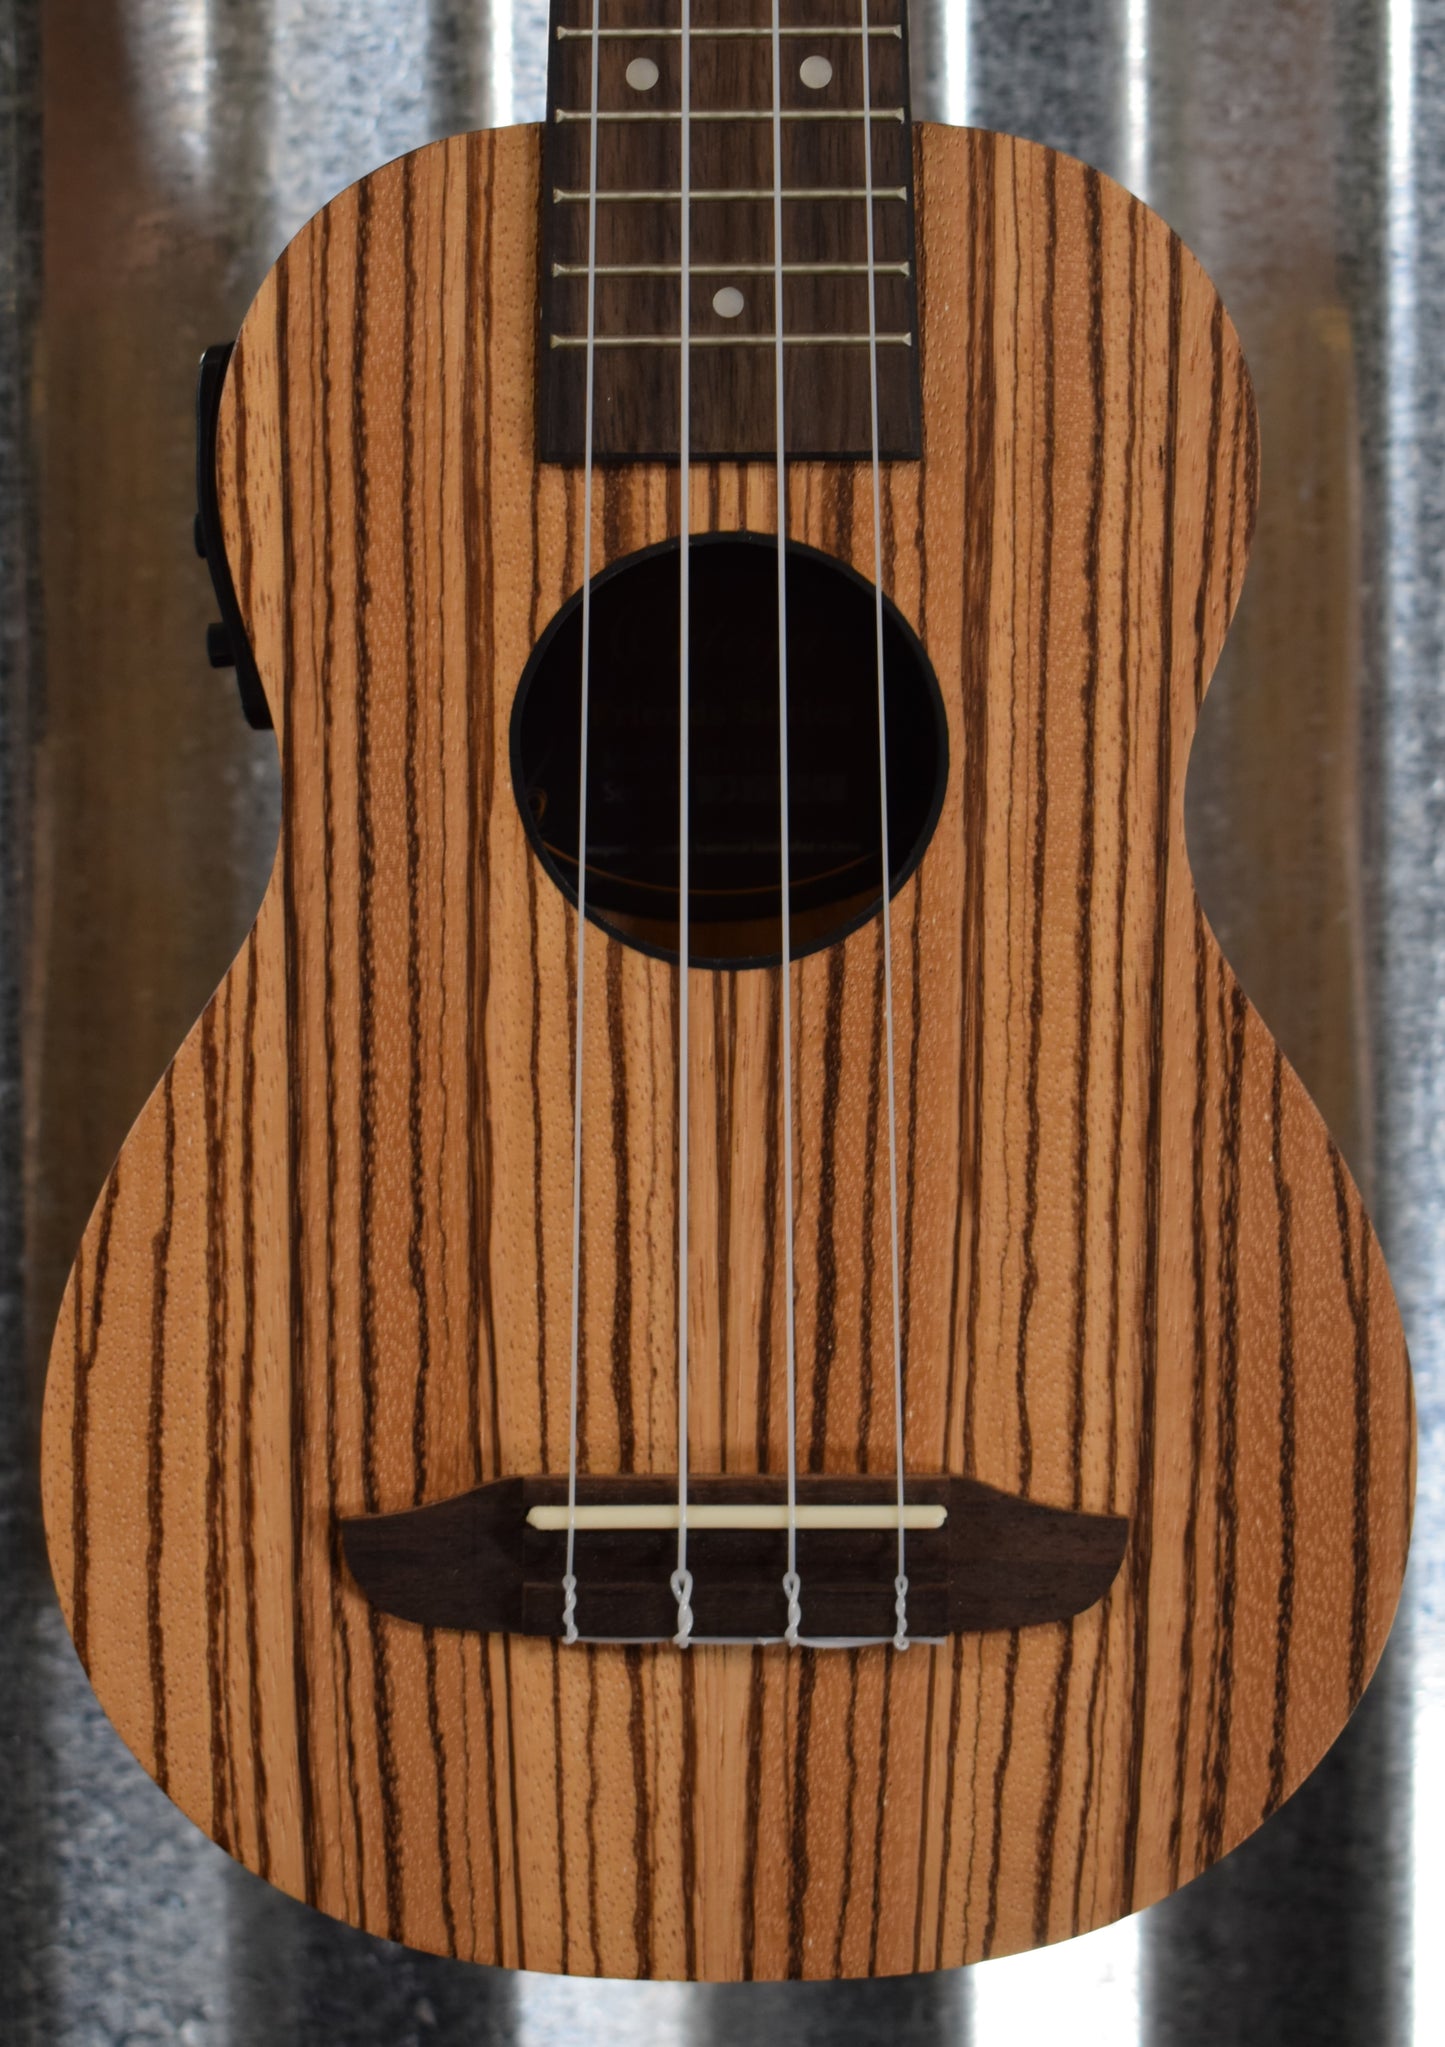 Ortega Guitars Friends Series RFU10ZE Zebrawood Acoustic Electric Soprano Ukulele & Bag